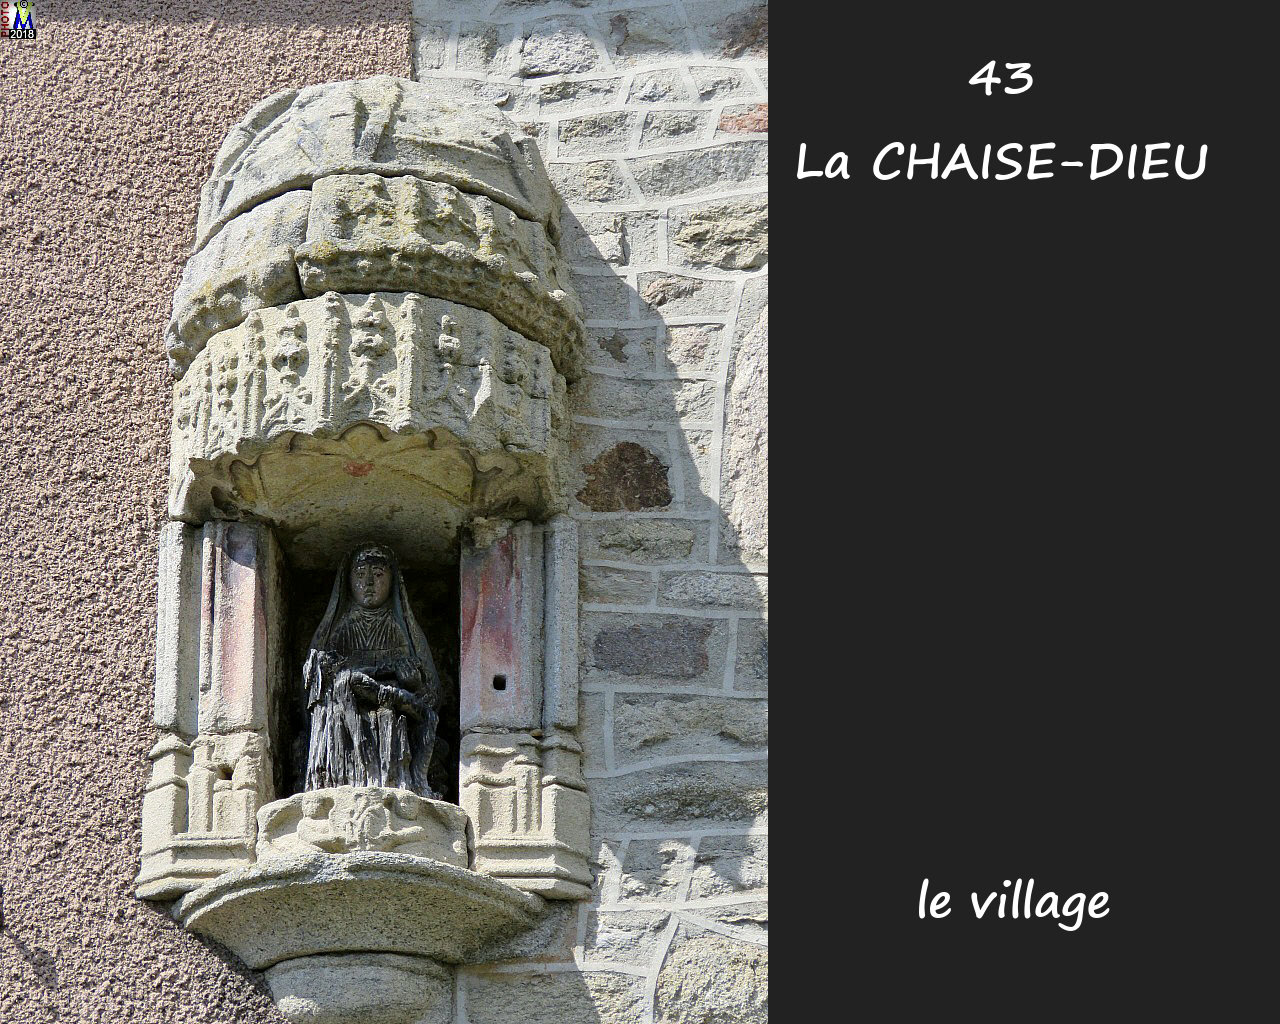 43CHAISE-DIEU_village_160.jpg